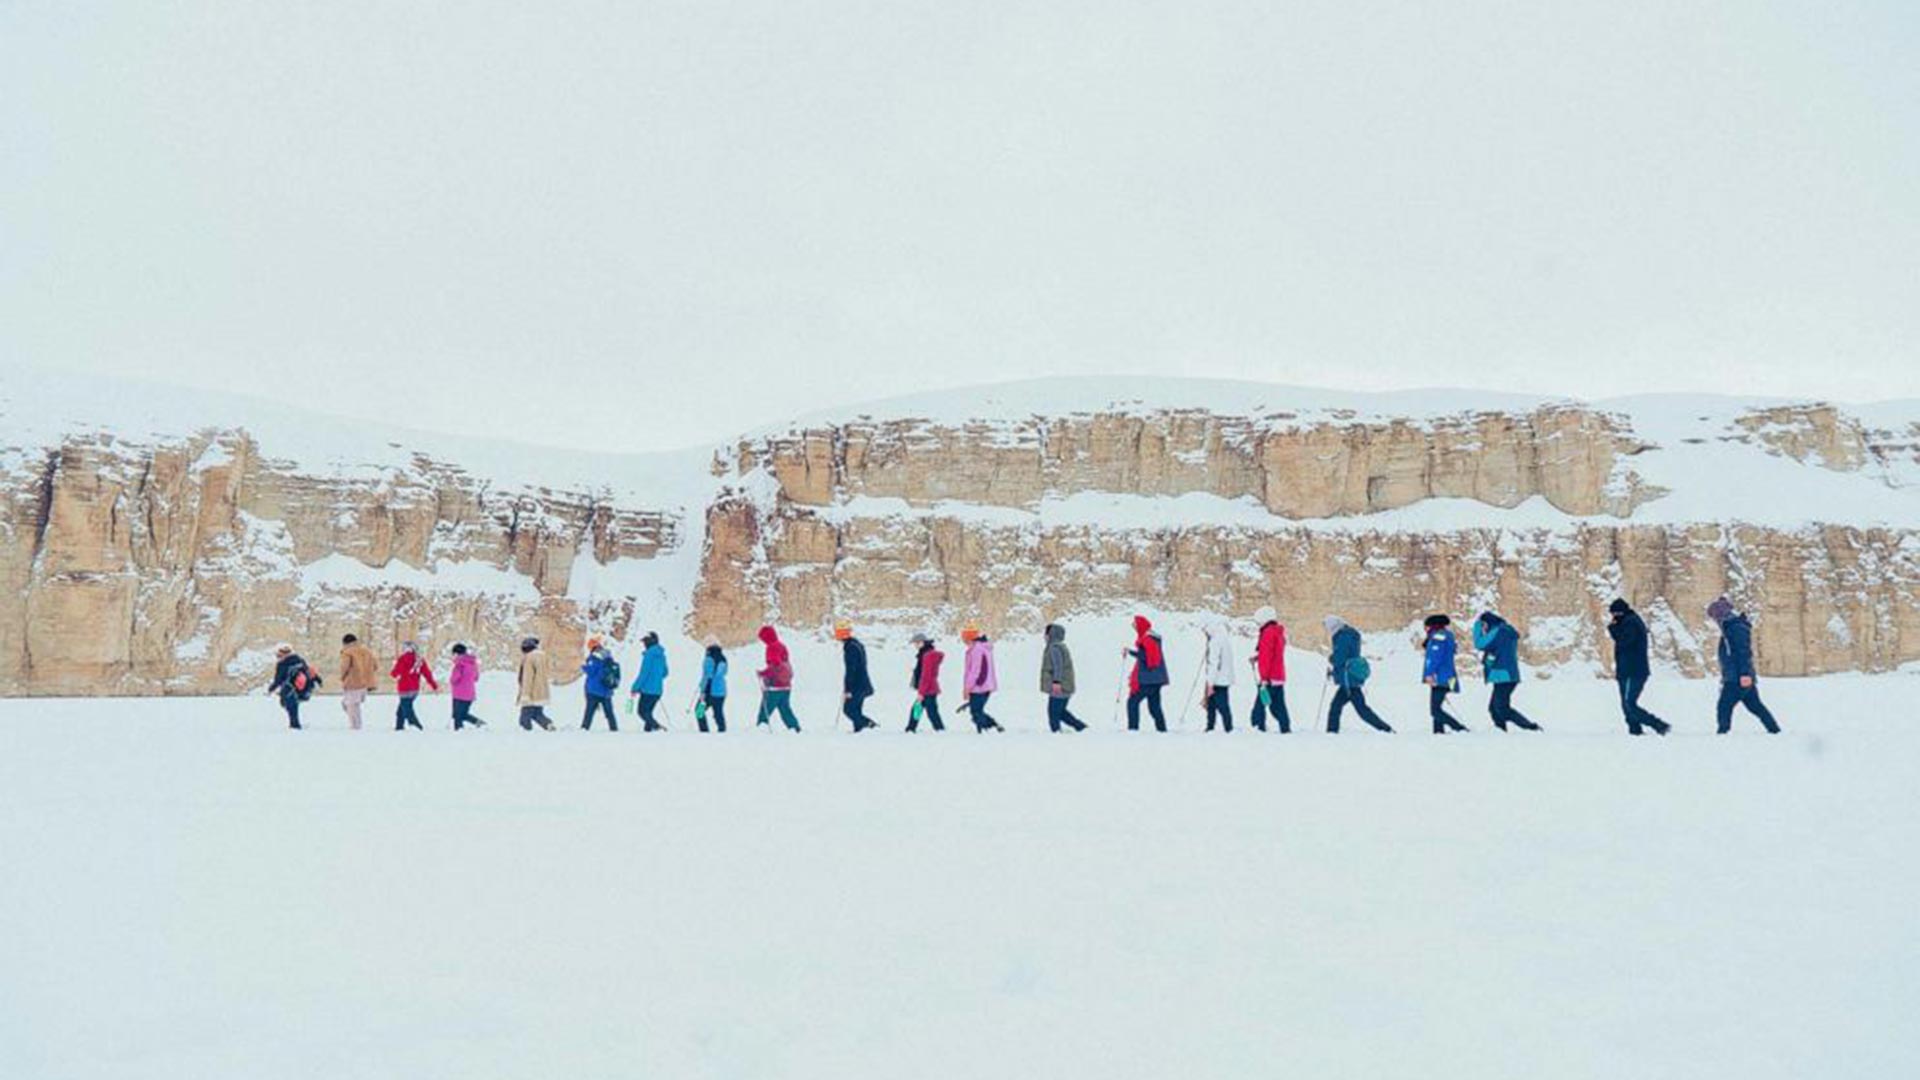 Mujeres caminando por la nieve en Afganistán, intentando llegar a un lugar seguro